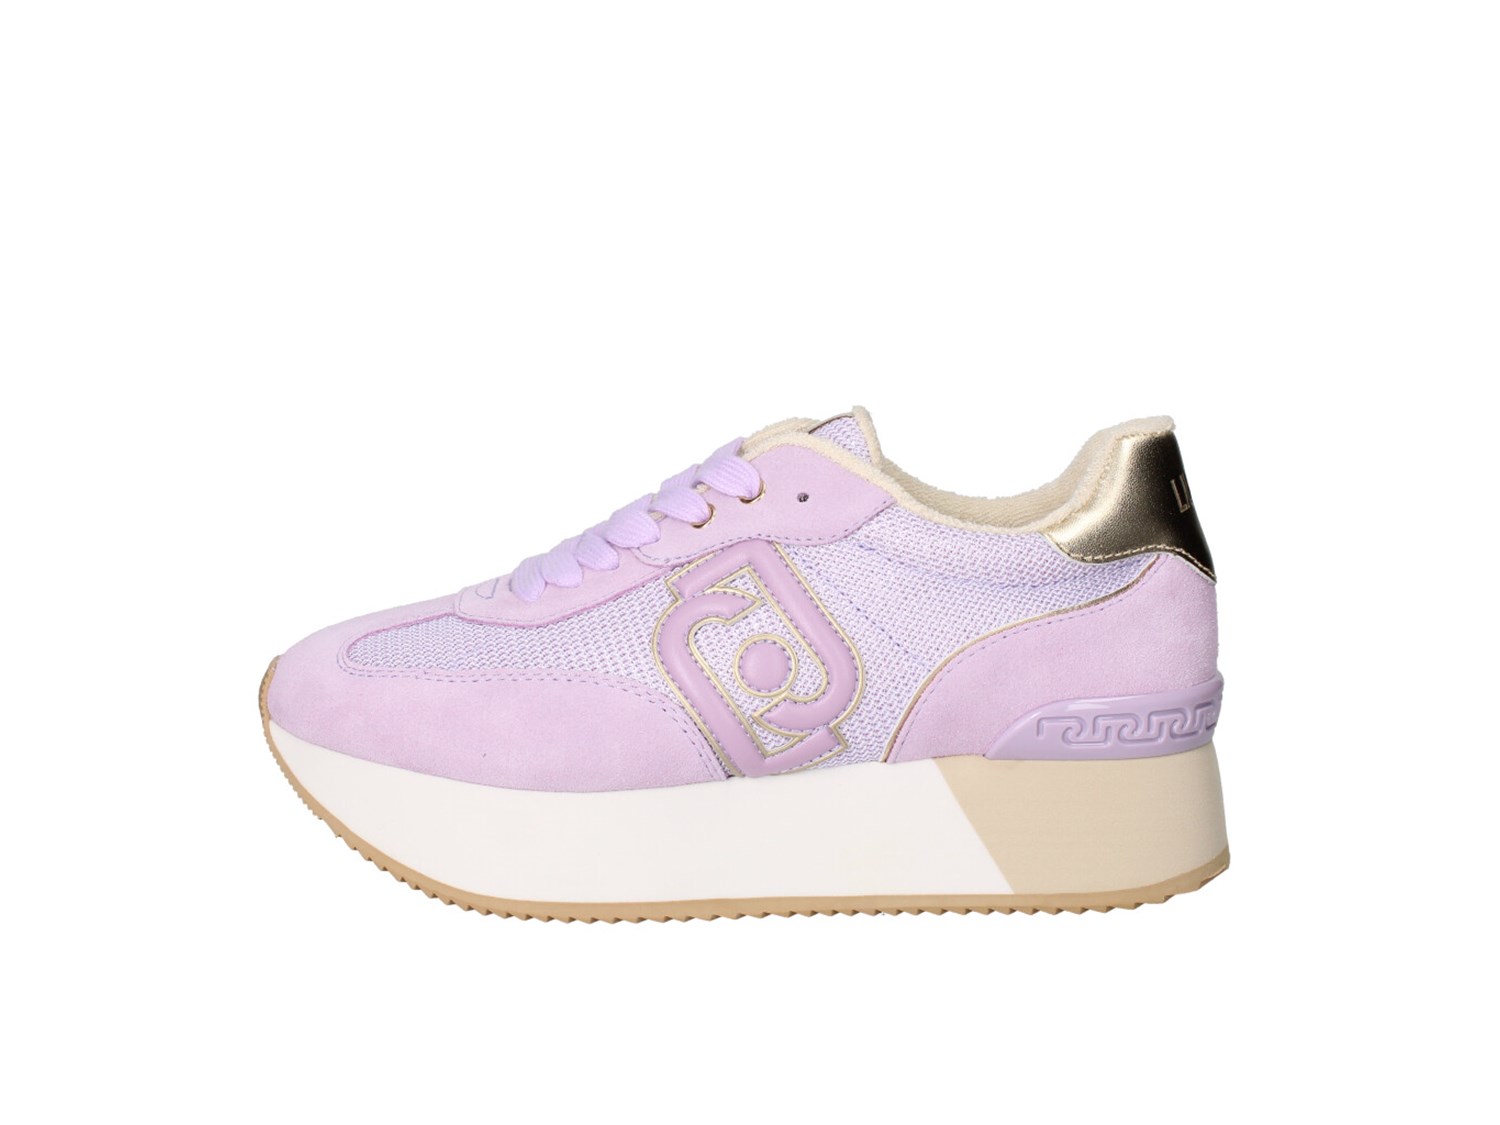 Liu Jo Dreamy02 S3275 Lilla Scarpe Donna Sneakers